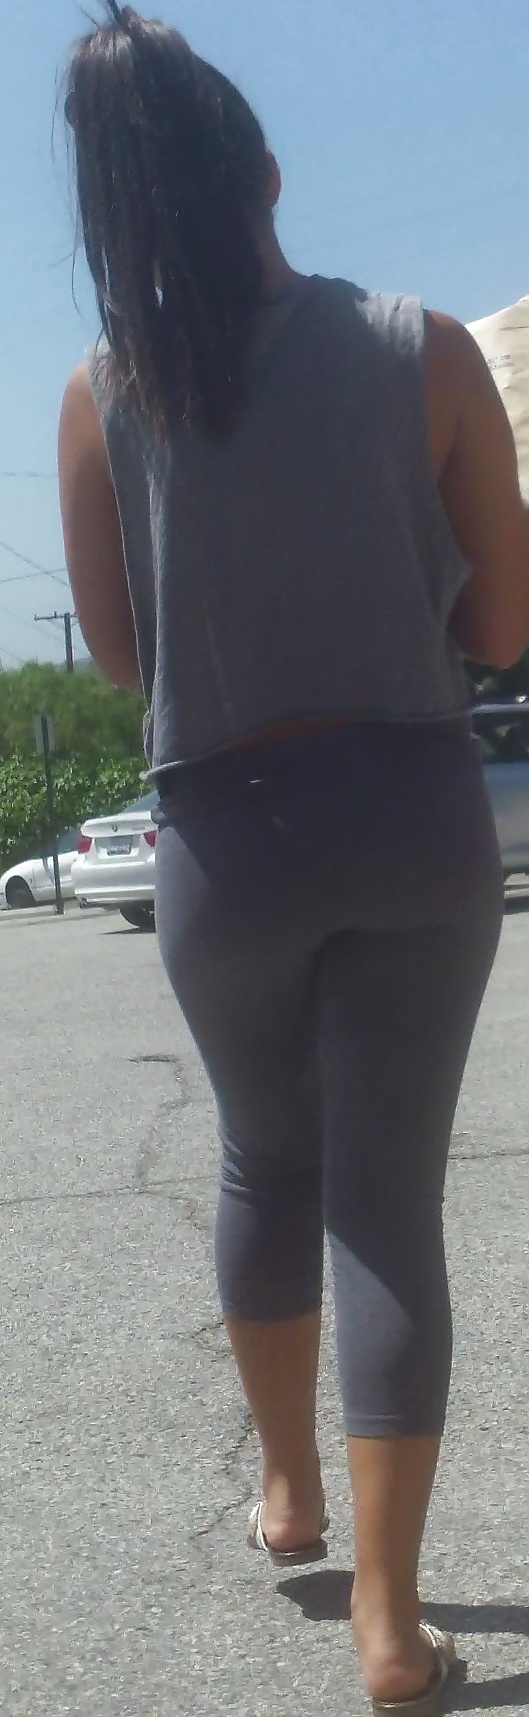 Popular teen girls ass & butt in jeans part 4  #26740112